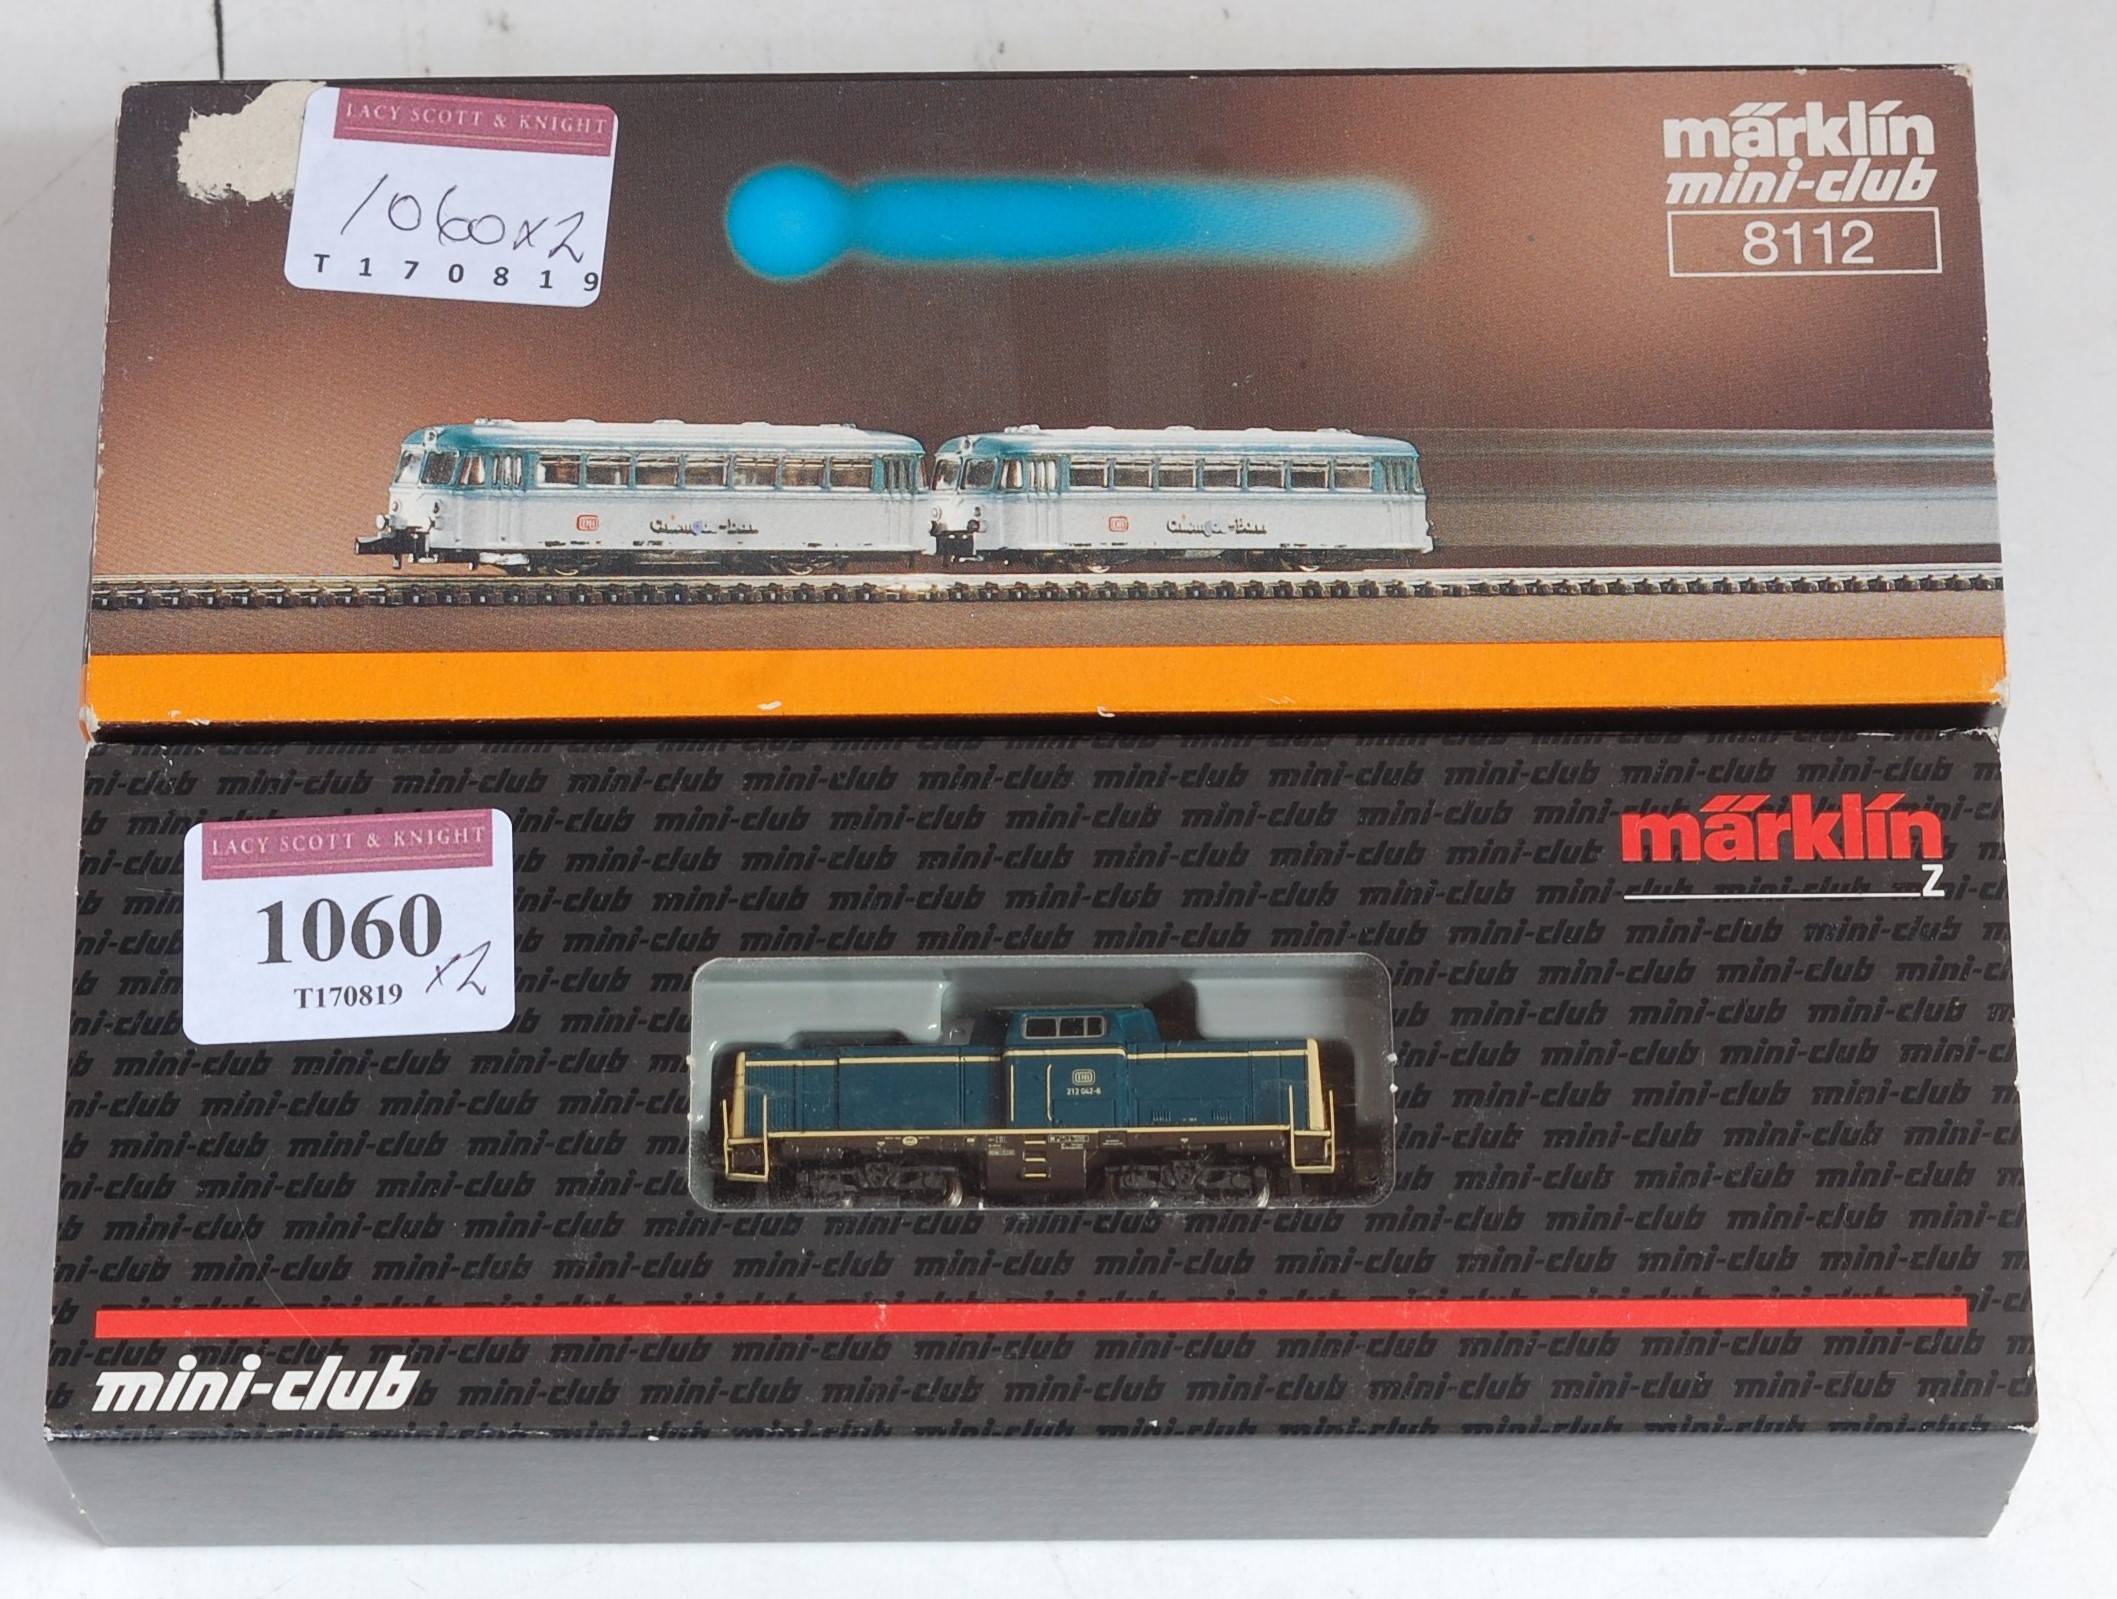 Marklin Mini-Club Ref. 88692 DB blue VBo-Bo diesel shunter (NM-BNM) together with Ref. 8112 DB